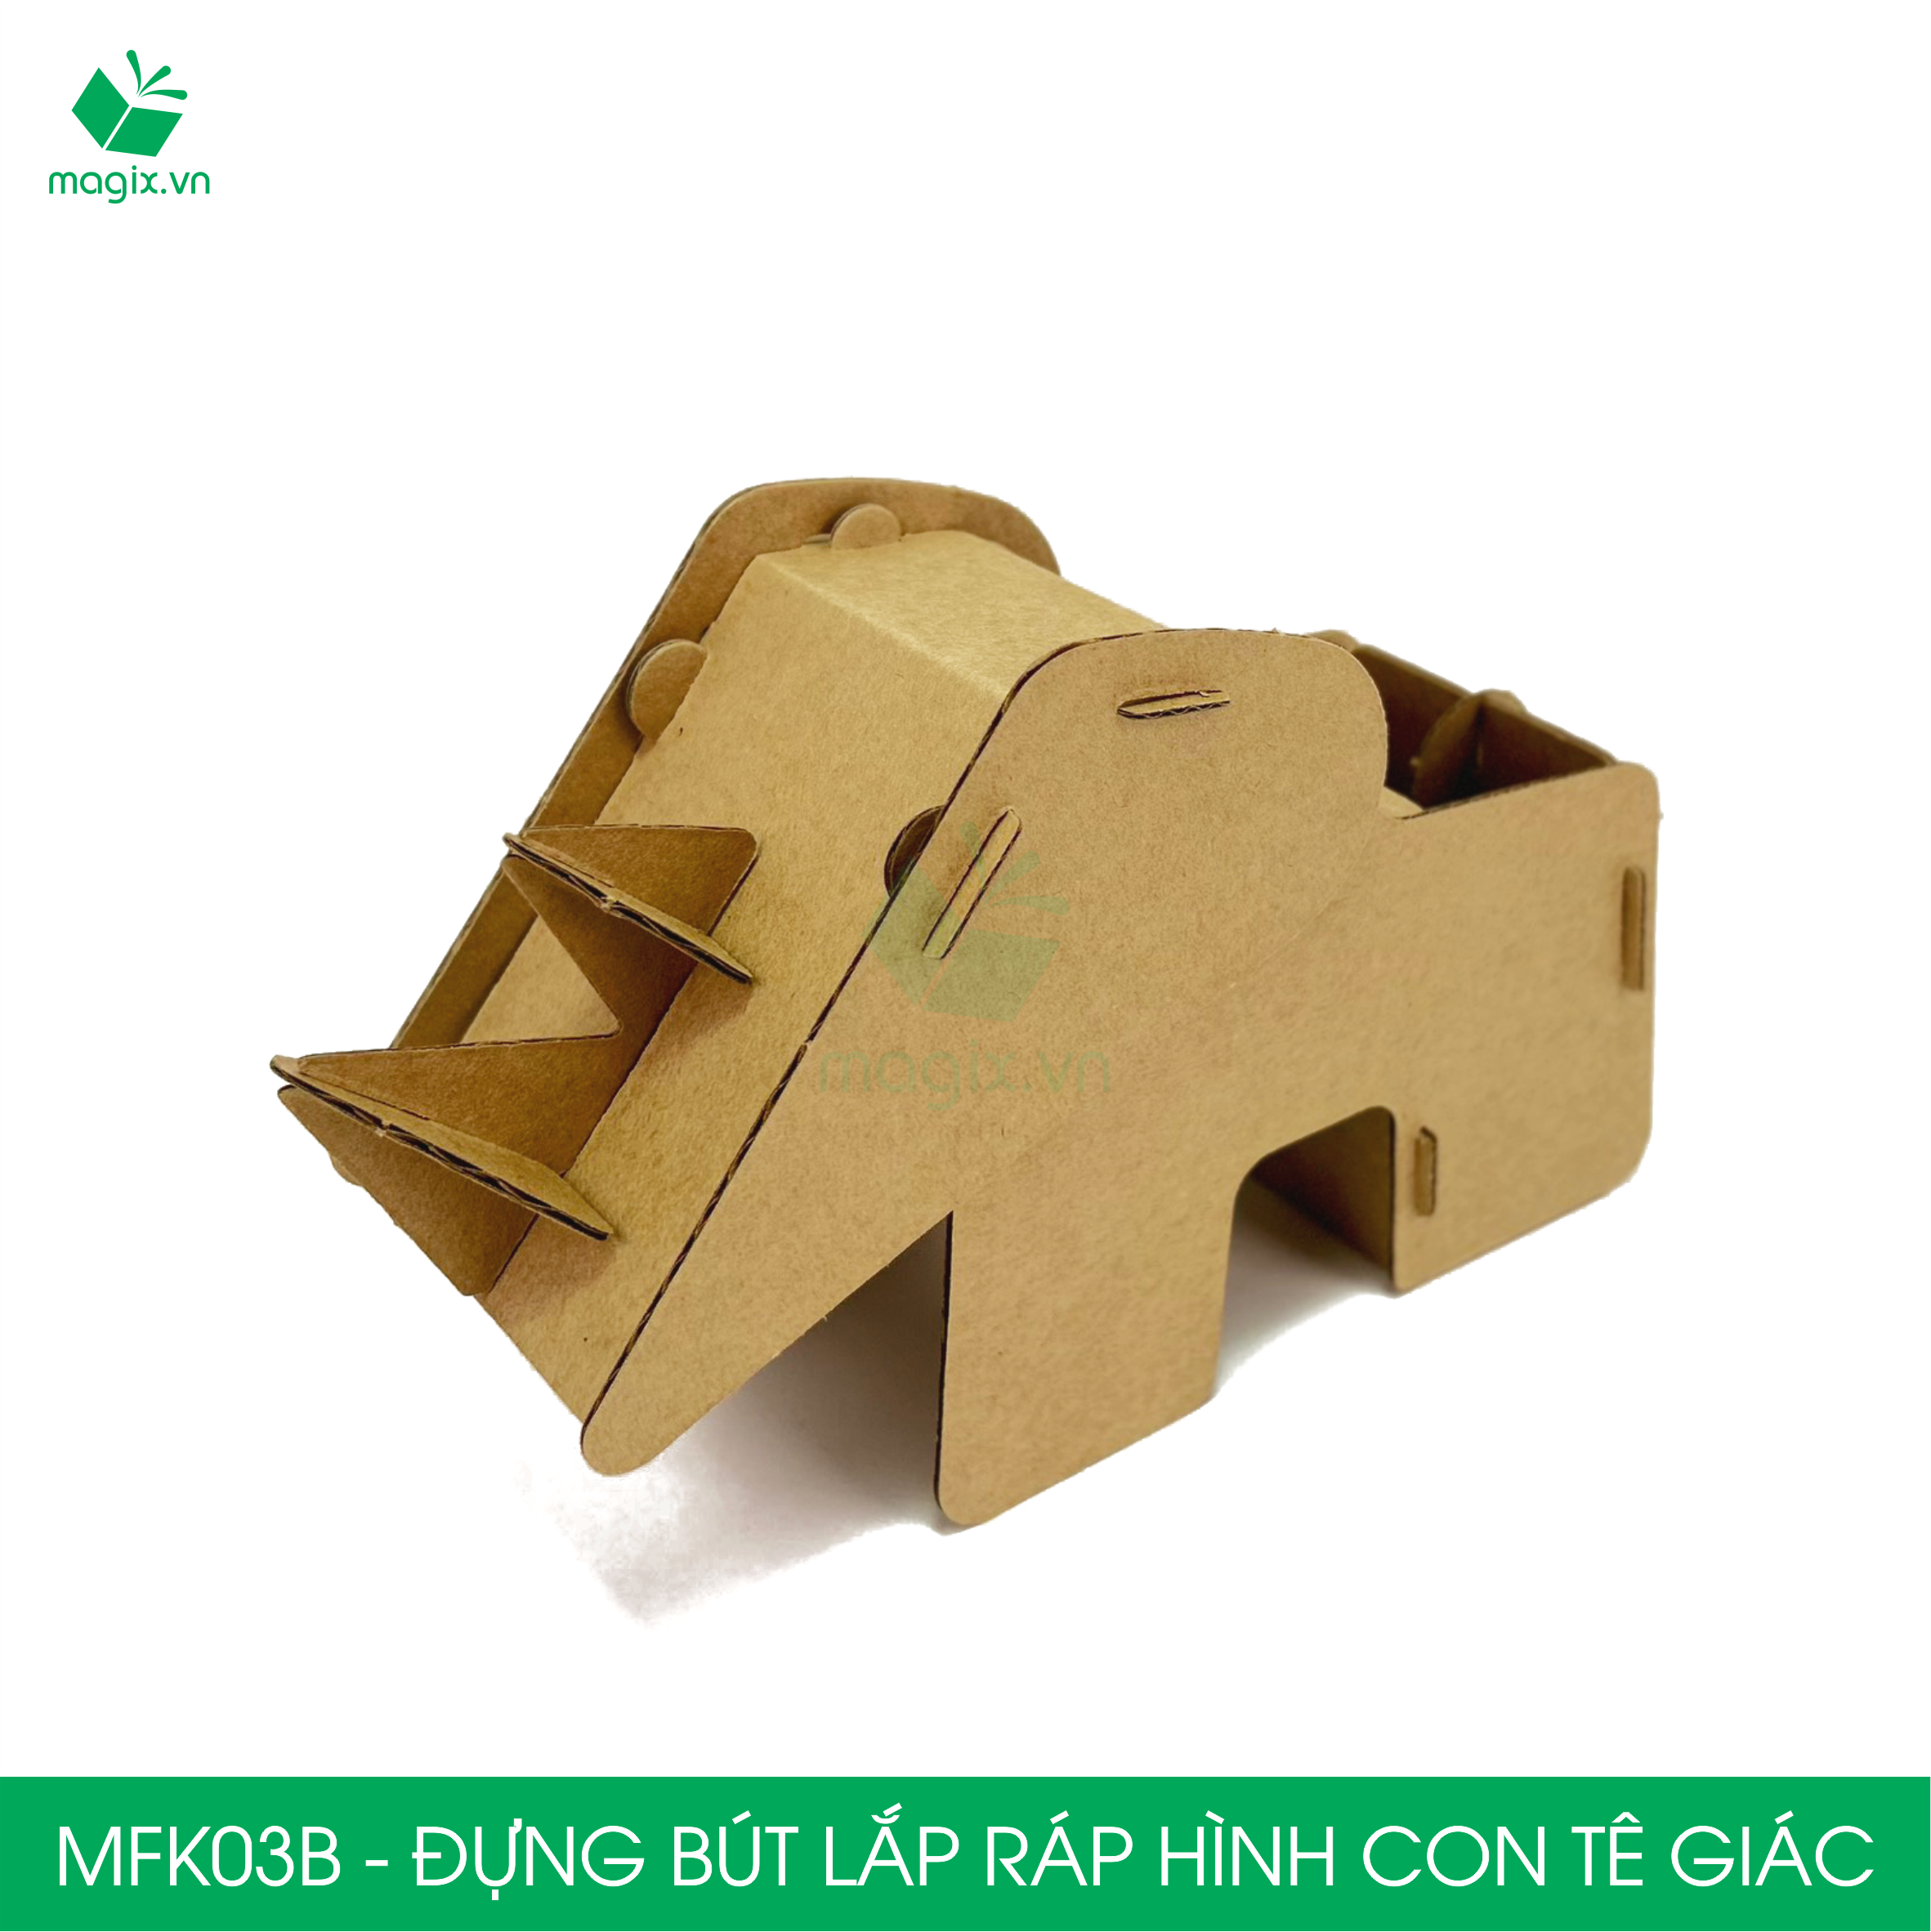 MFK03B - Đựng bút lắp ráp hình con tê giác, đồ đựng bút hình thú bằng giấy carton siêu cứng